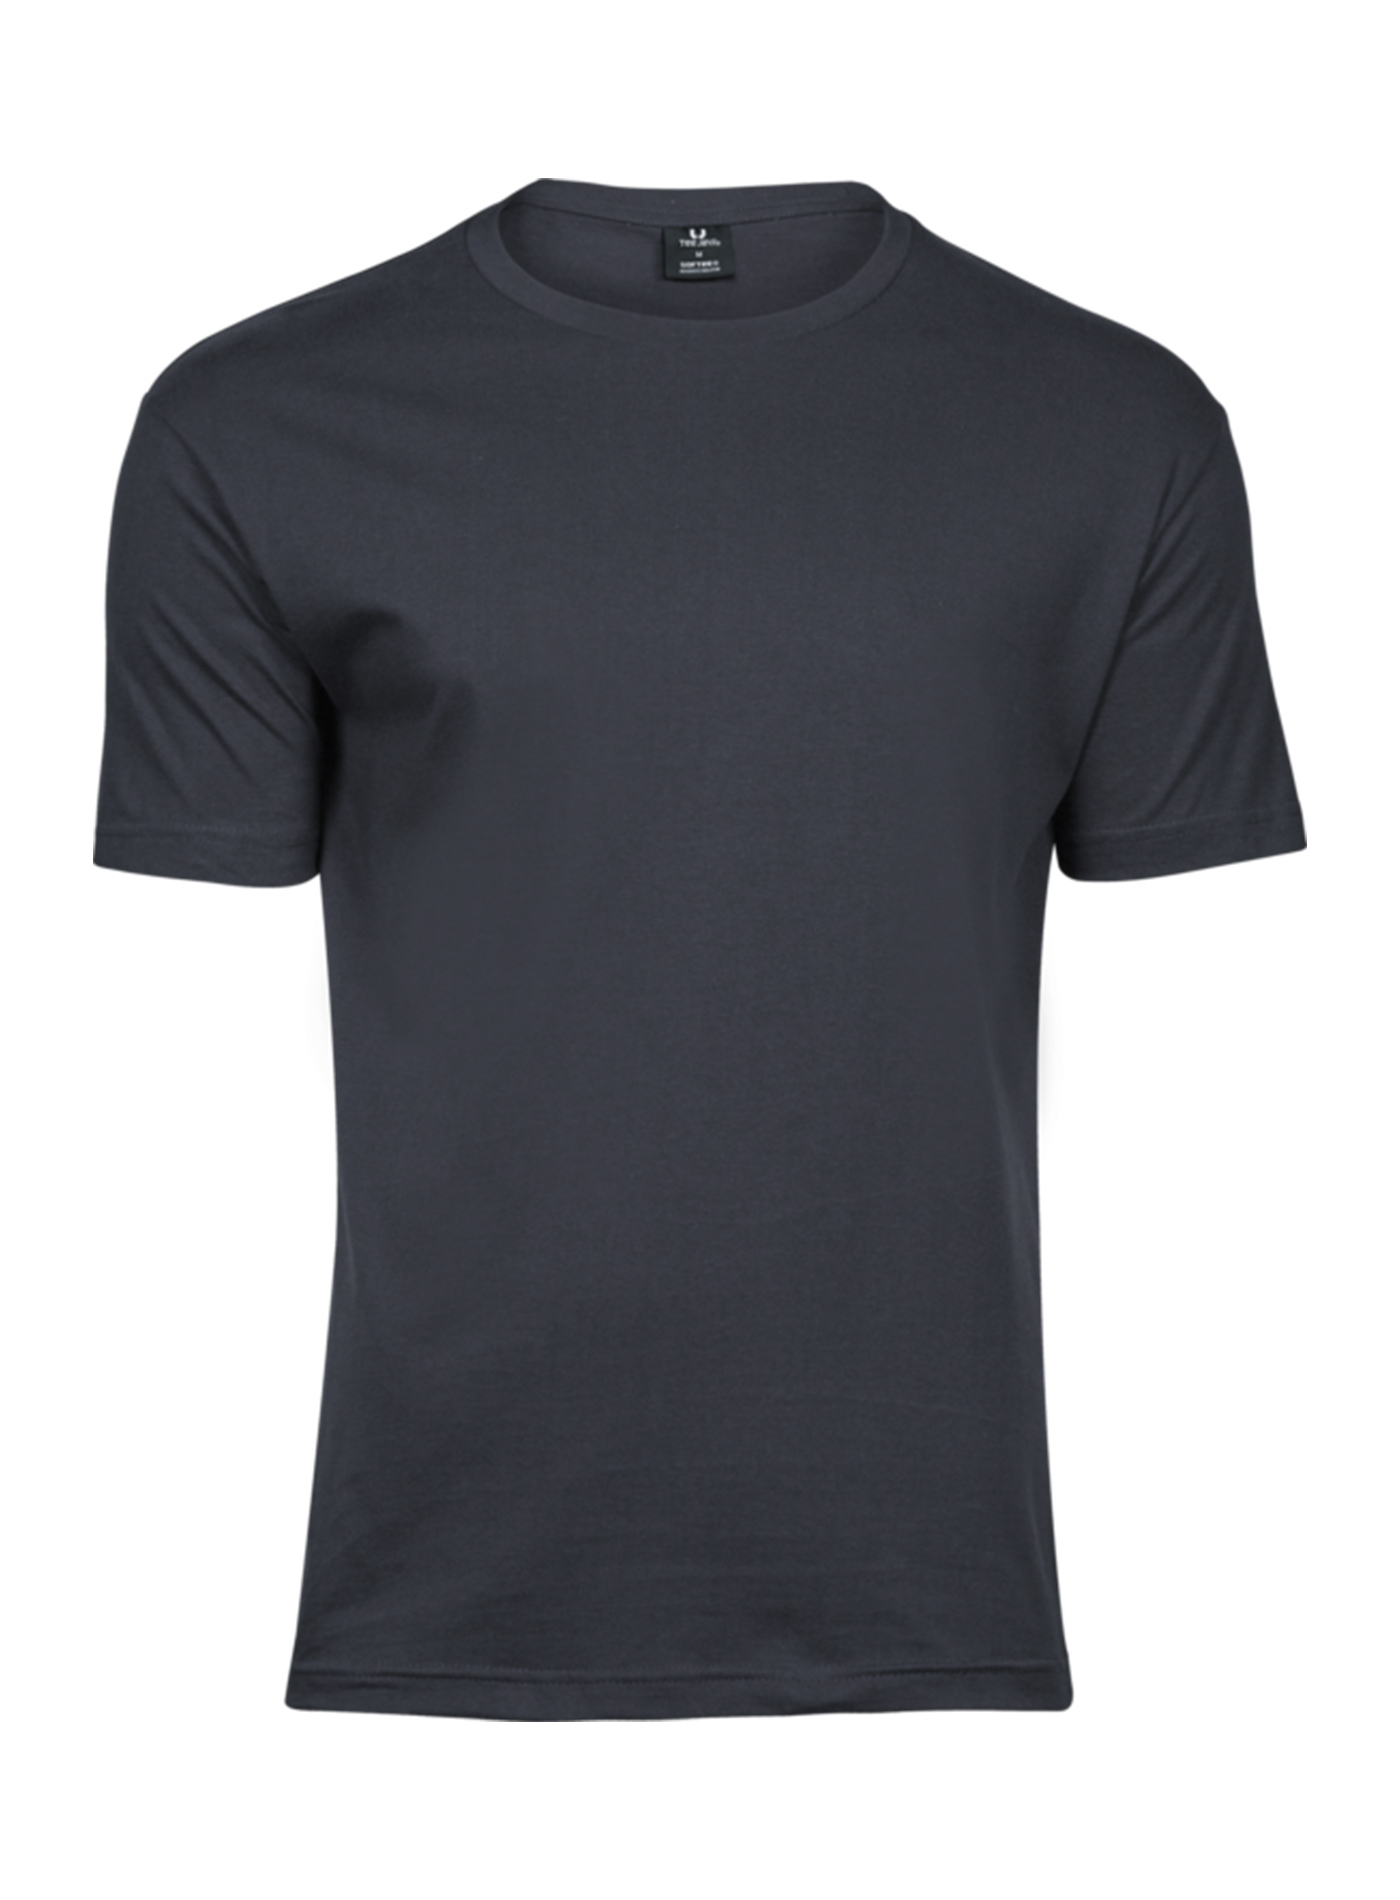 Pánské tričko Fashion Tee Jays - Tmavě šedá S